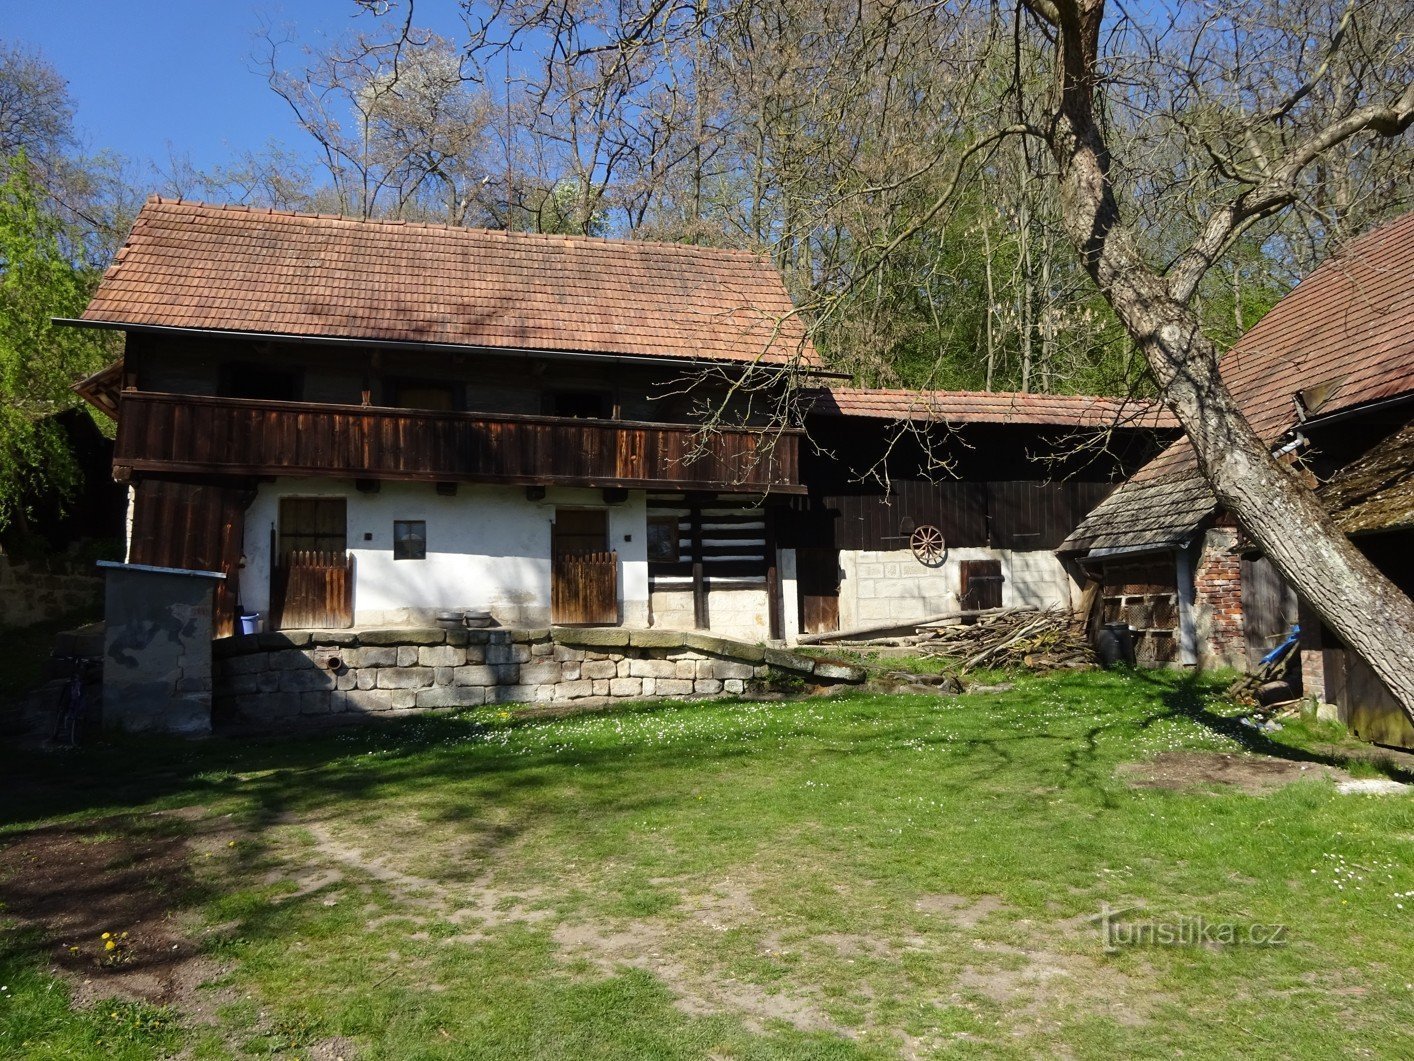 El pueblo de Střehom cerca de Dolní Bouzov y el molino de cuento de hadas